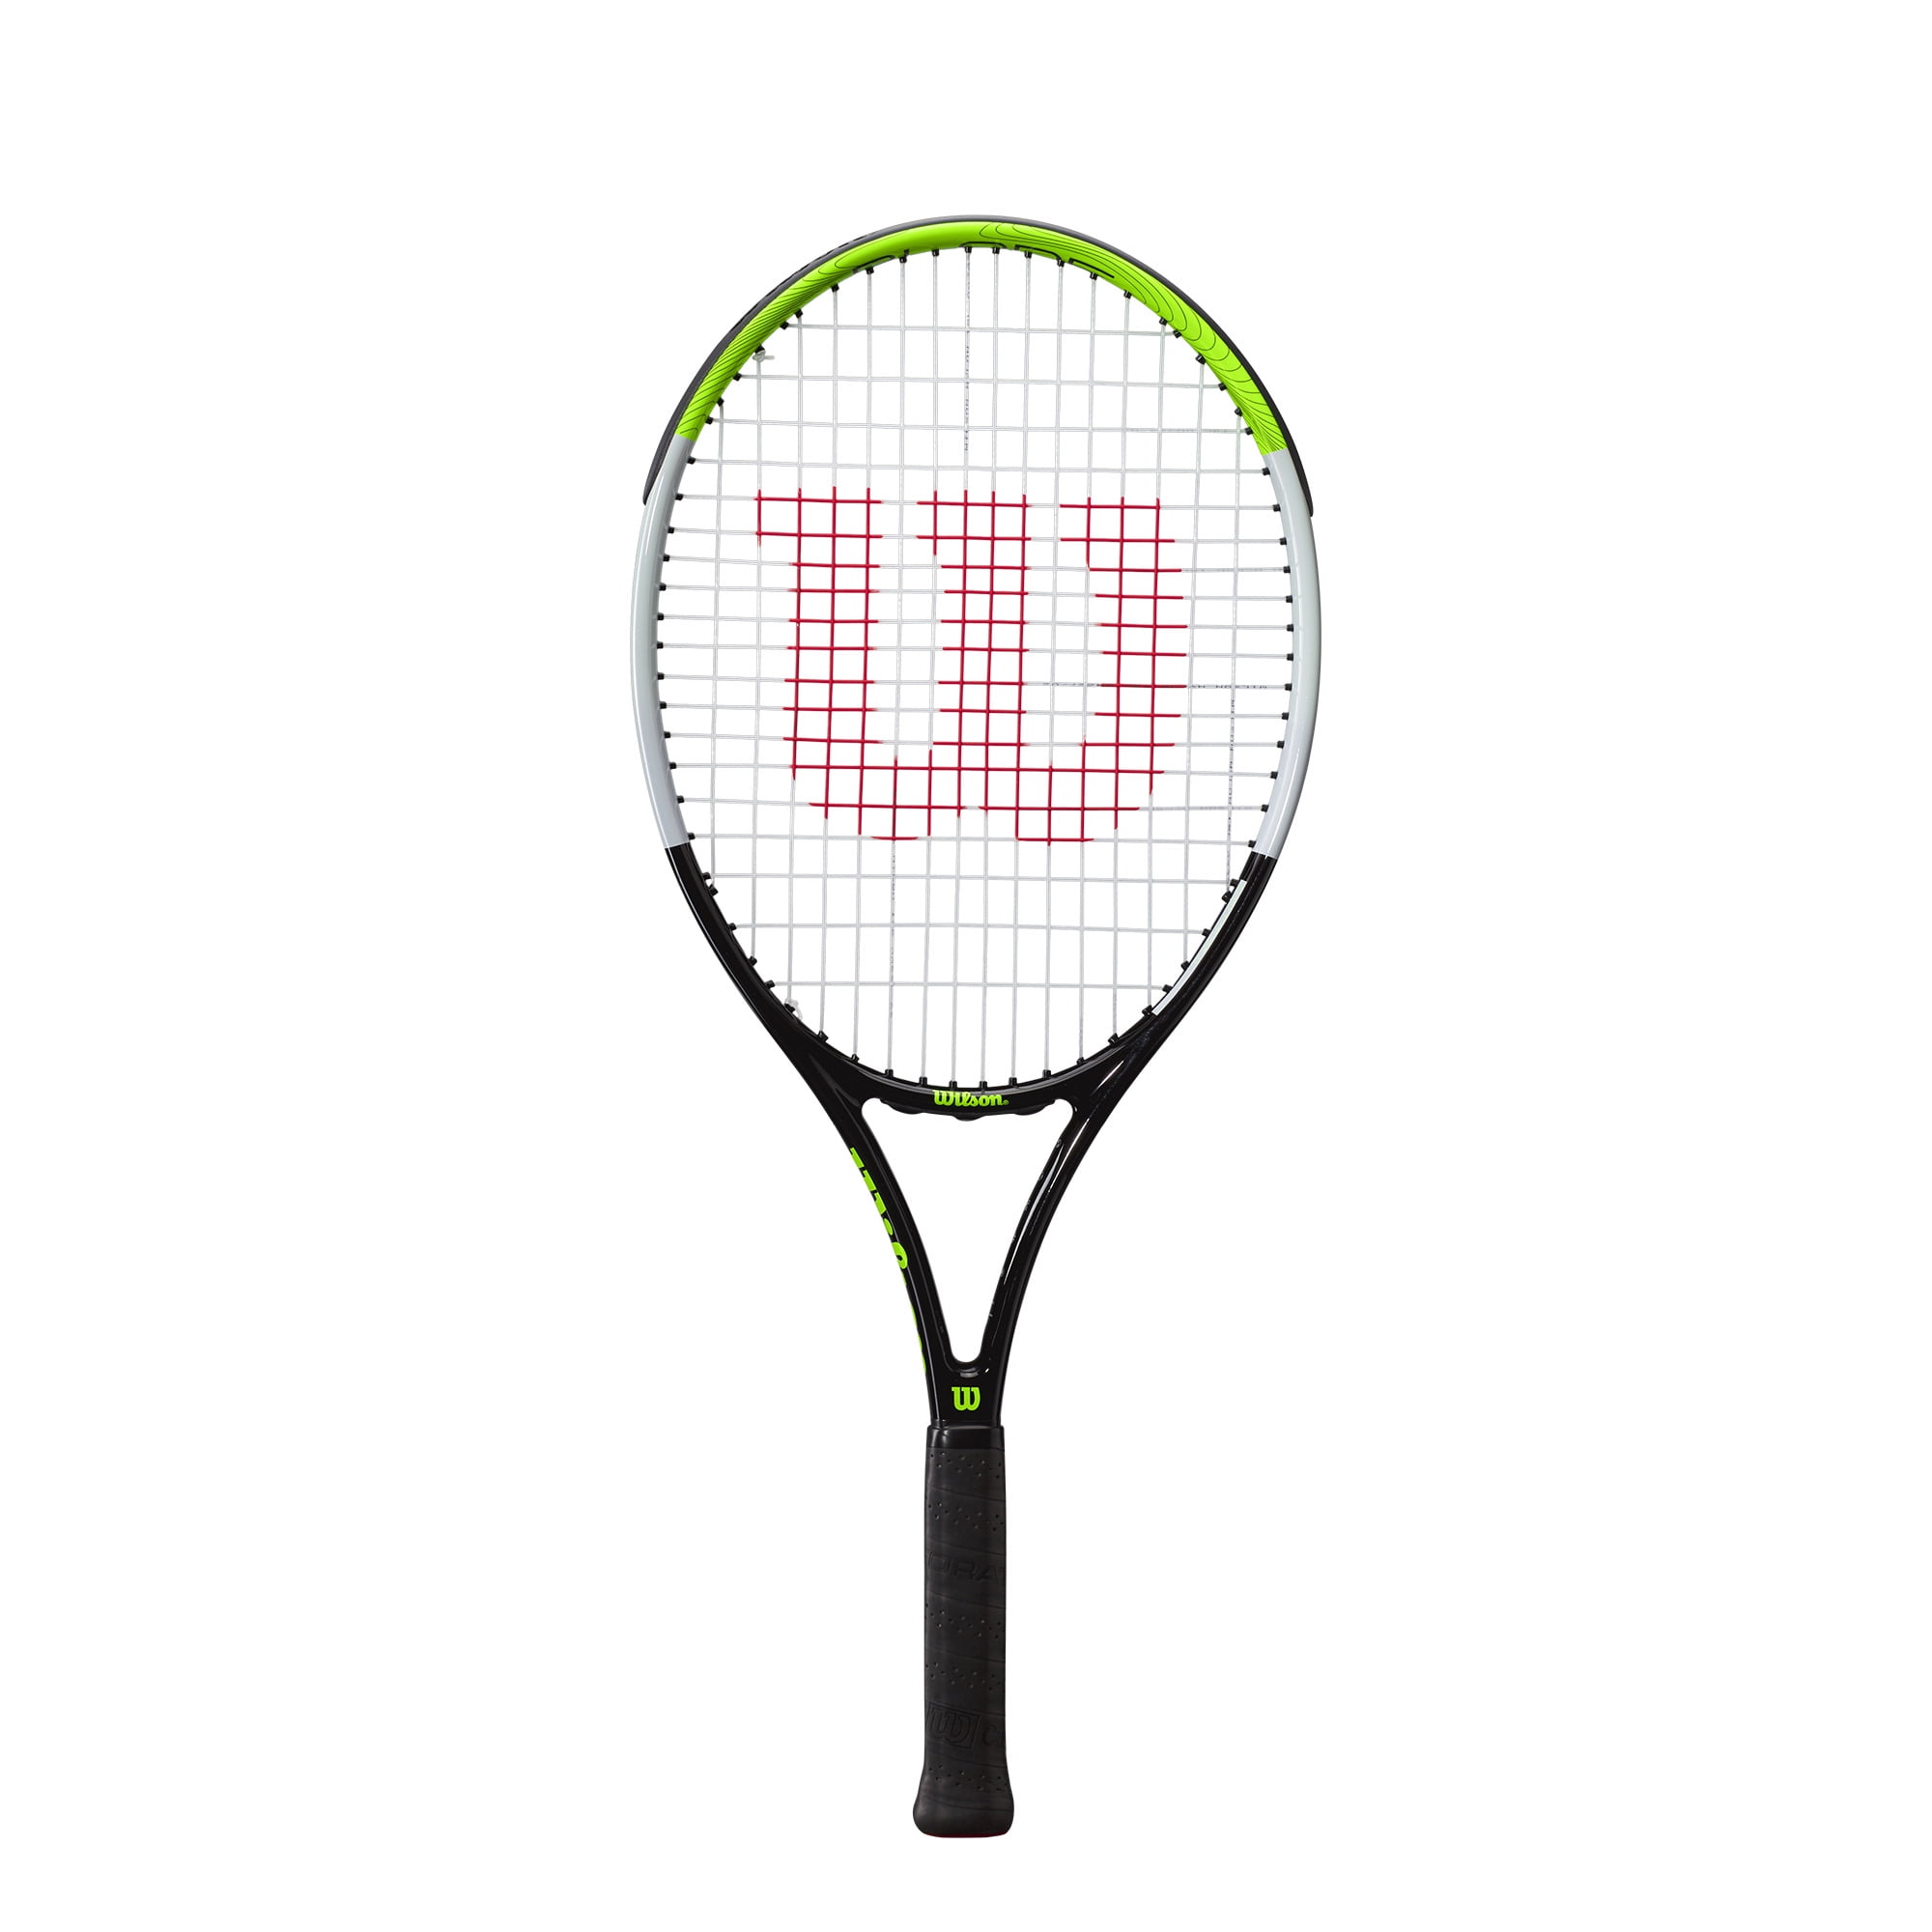 4 1/4" Grip Wilson Tennis Racquet Gold/White Venus Serena 27" Standard L2